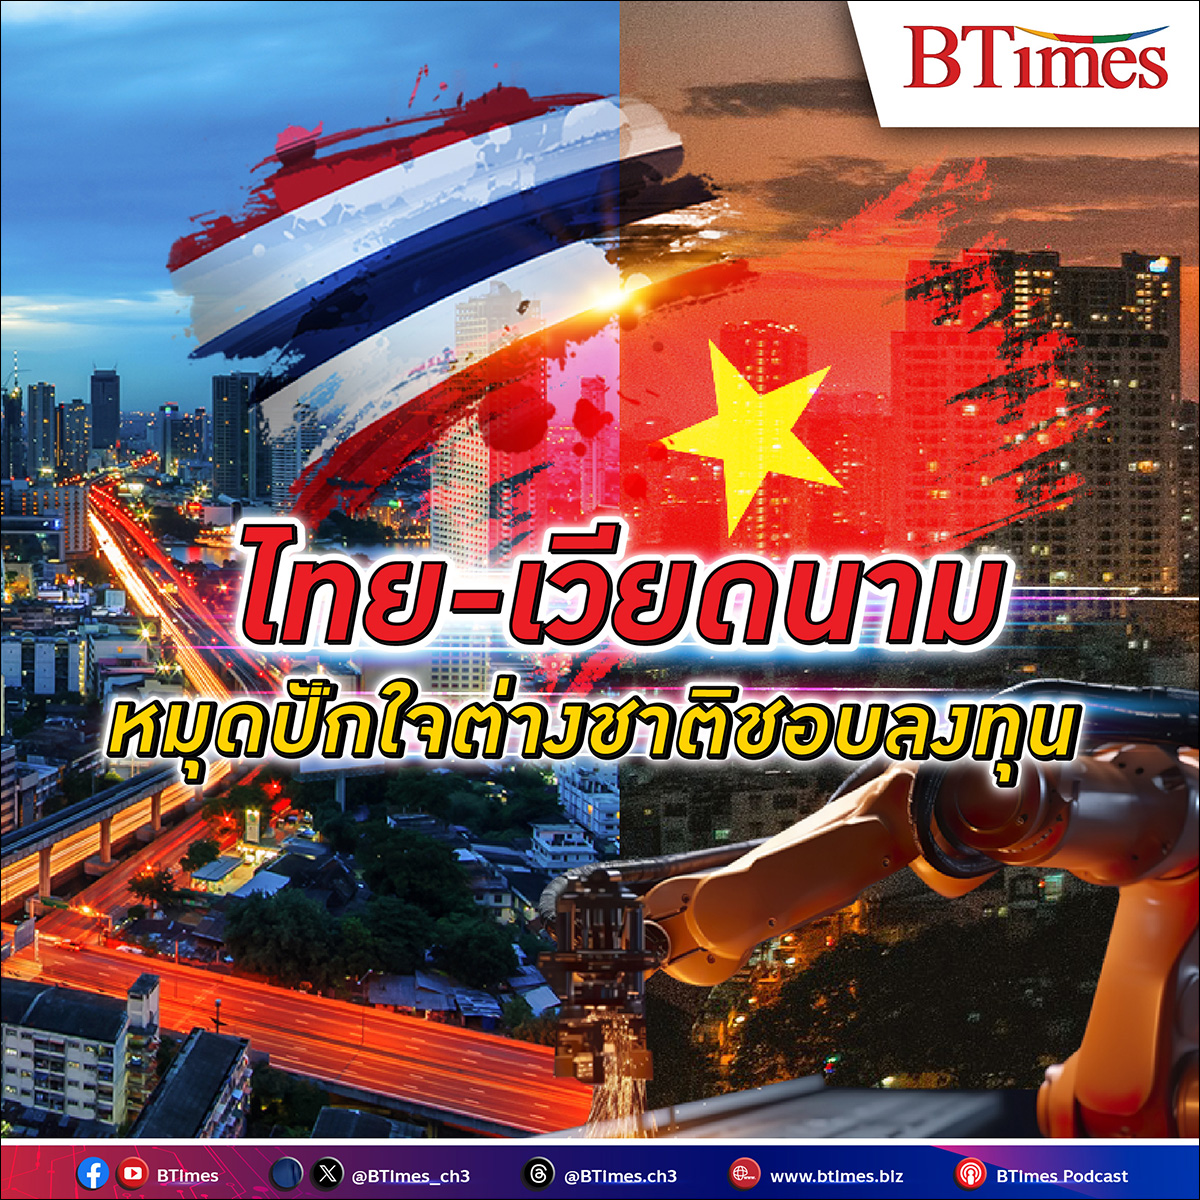 ต่างชาติปักธง ไทย เบียดเวียดนามขึ้นแท่นอันดับ 2 ประเทศน่า ลงทุน ในเอเชีย ความหวังดึงเม็ดเงินดันเศรษฐกิจไทยฟื้นไข้ กำลังซื้อกลับคืนกระเป๋าคนไทย